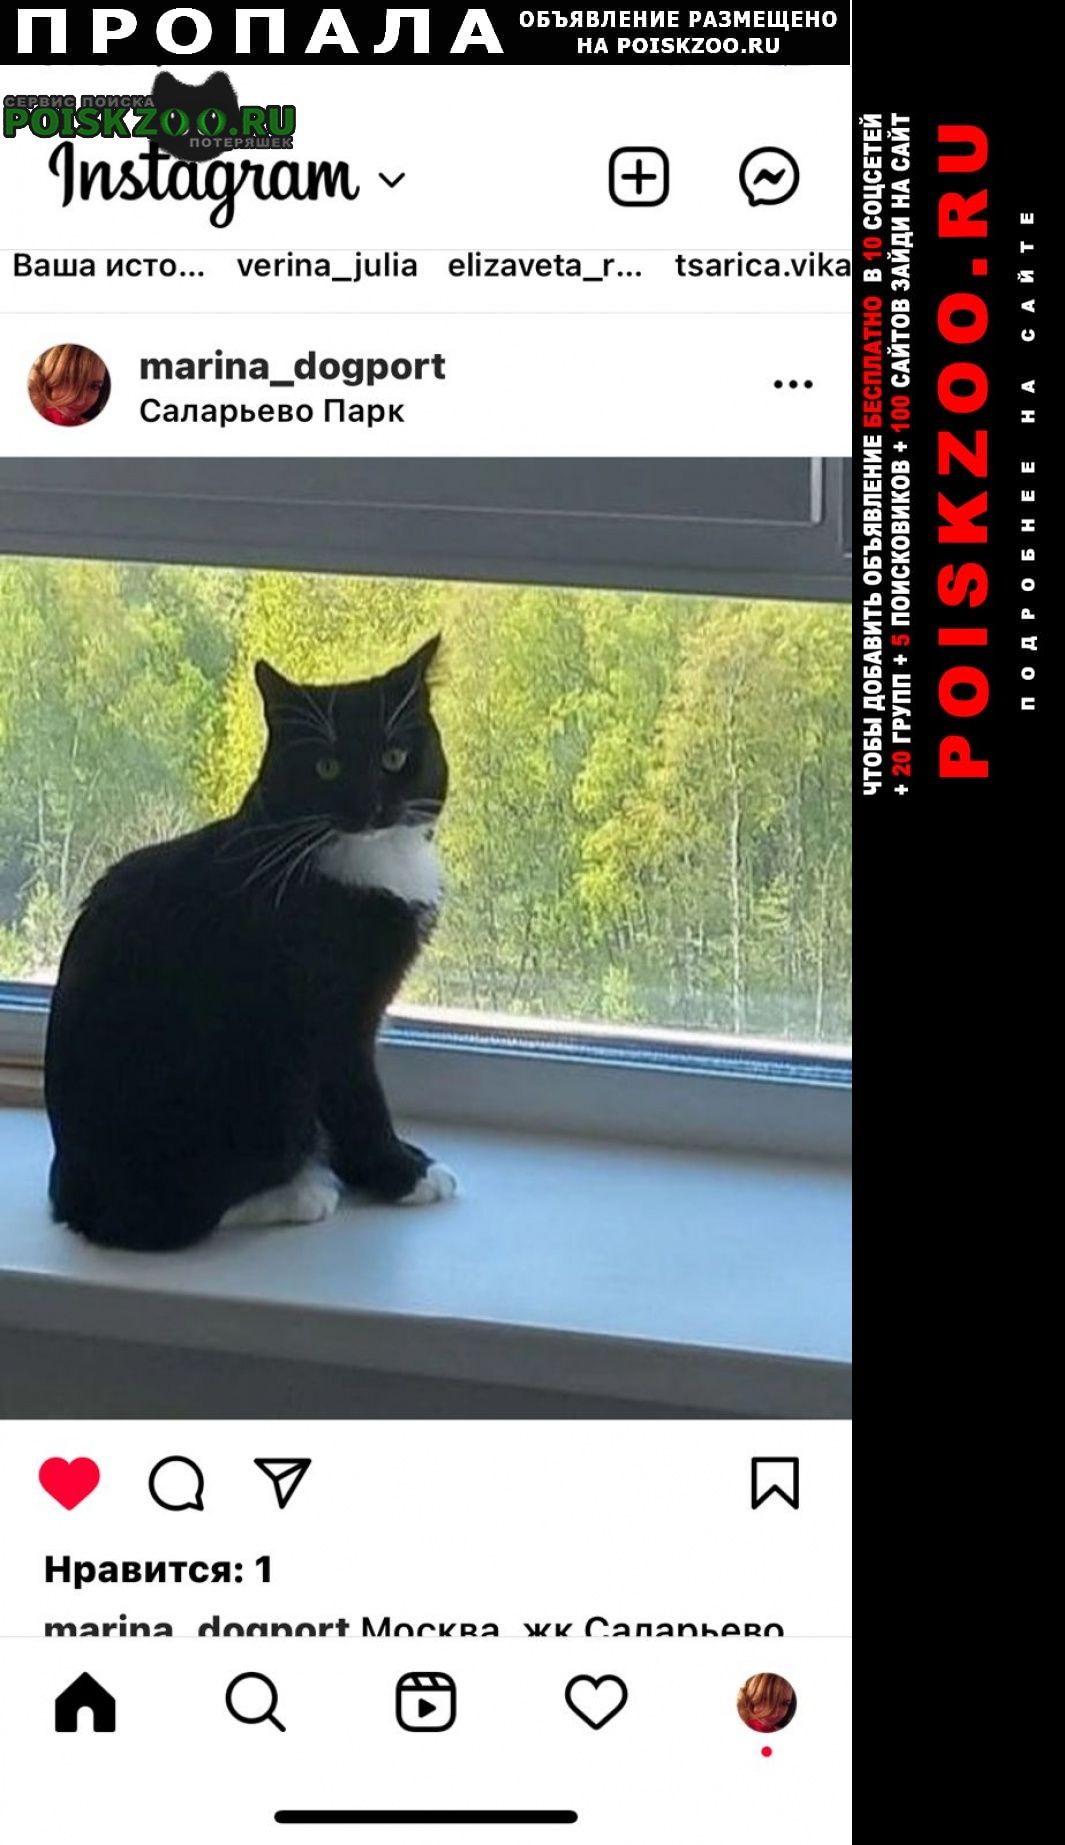 Пропал кот максимальный репост Московский